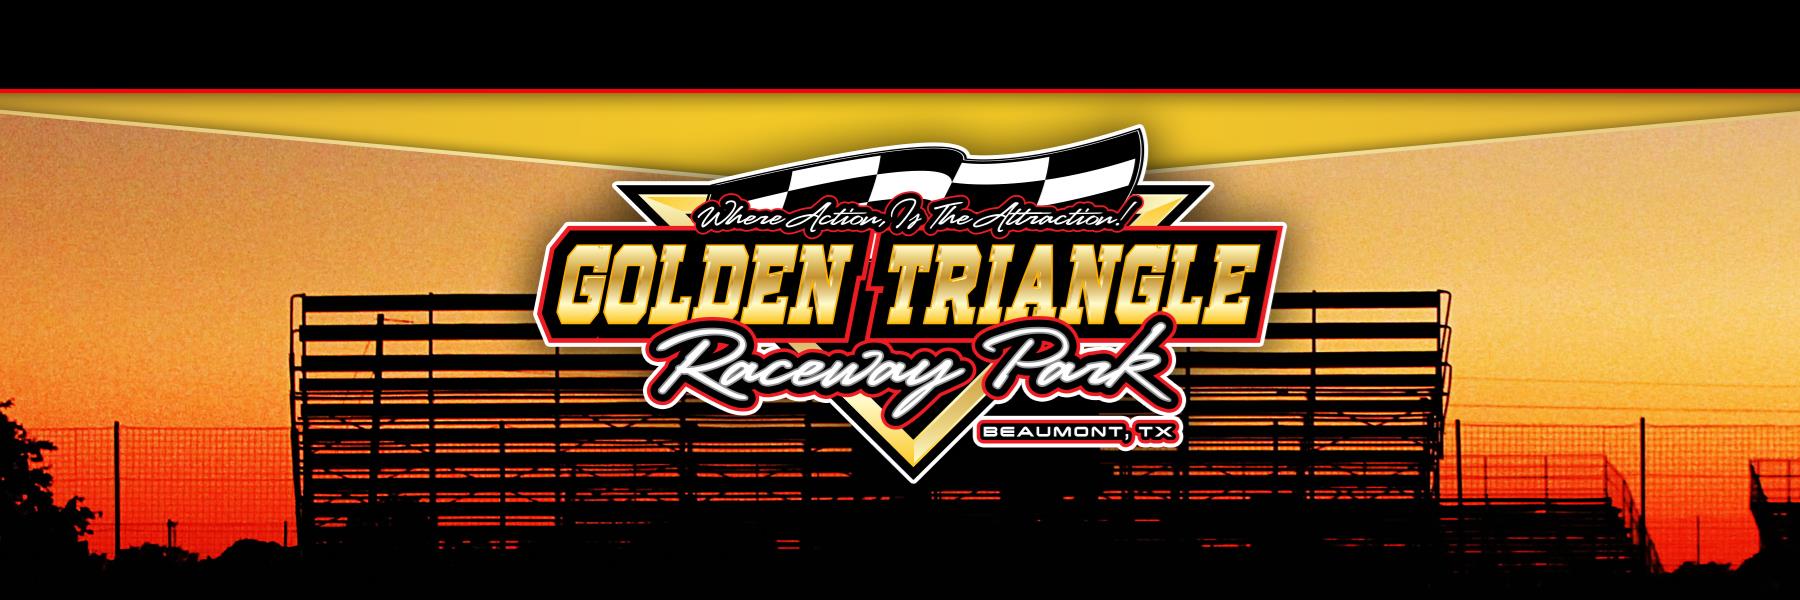 4/6/2019 - Golden Triangle Raceway Park